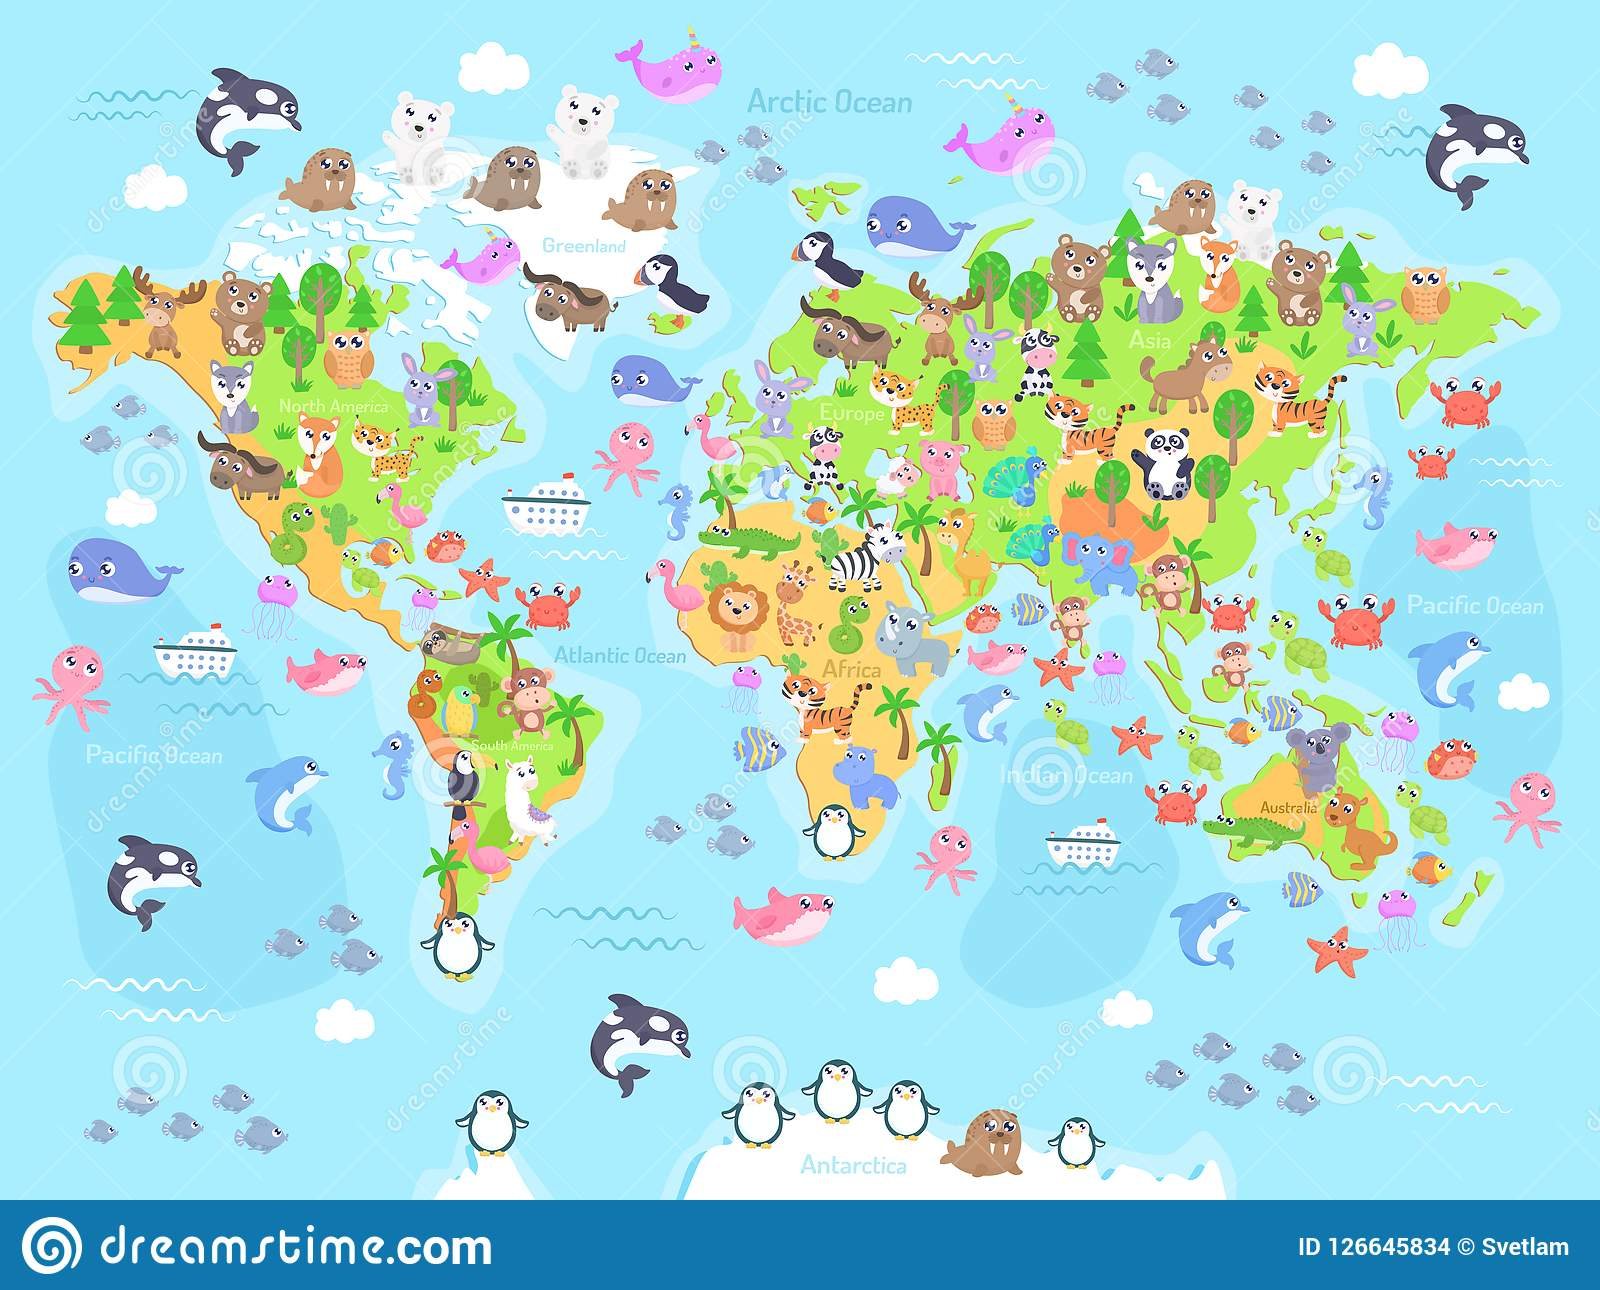 Dirigez L'illustration De La Carte Du Monde Avec Des Animaux destiné Carte Du Monde Pour Enfant